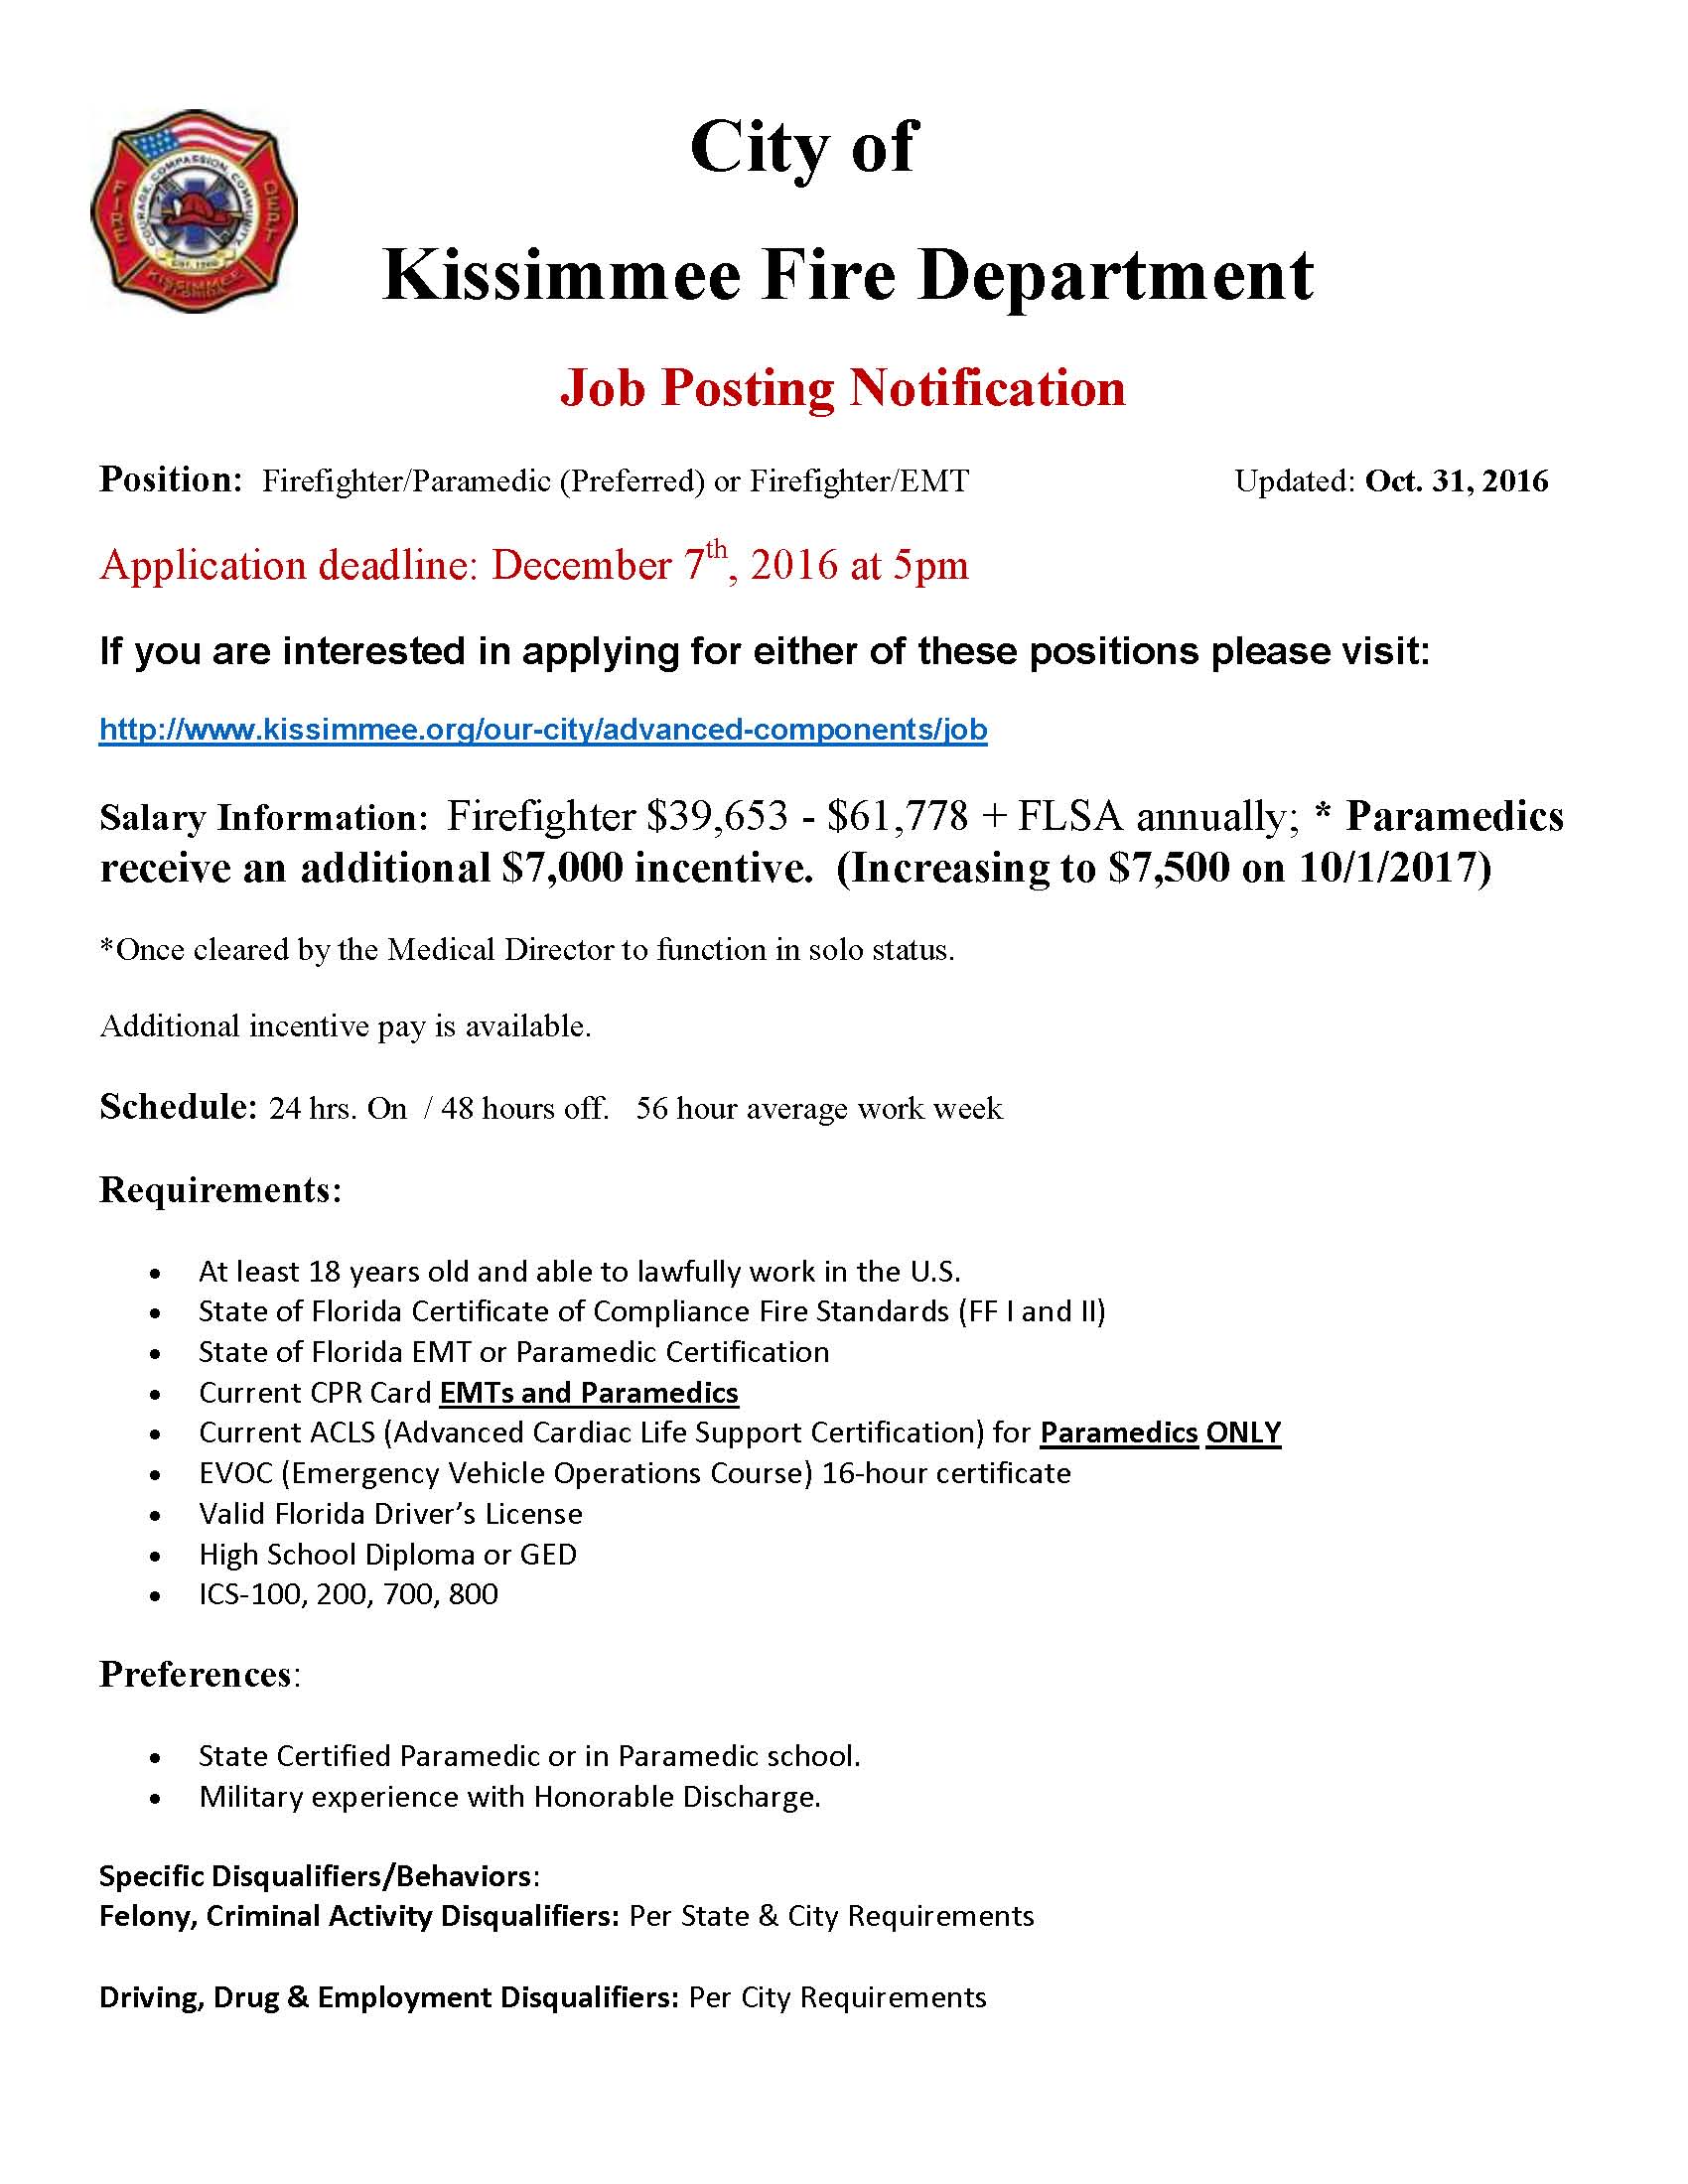 Kissimmee Fire Dept Hiring FF/Medic